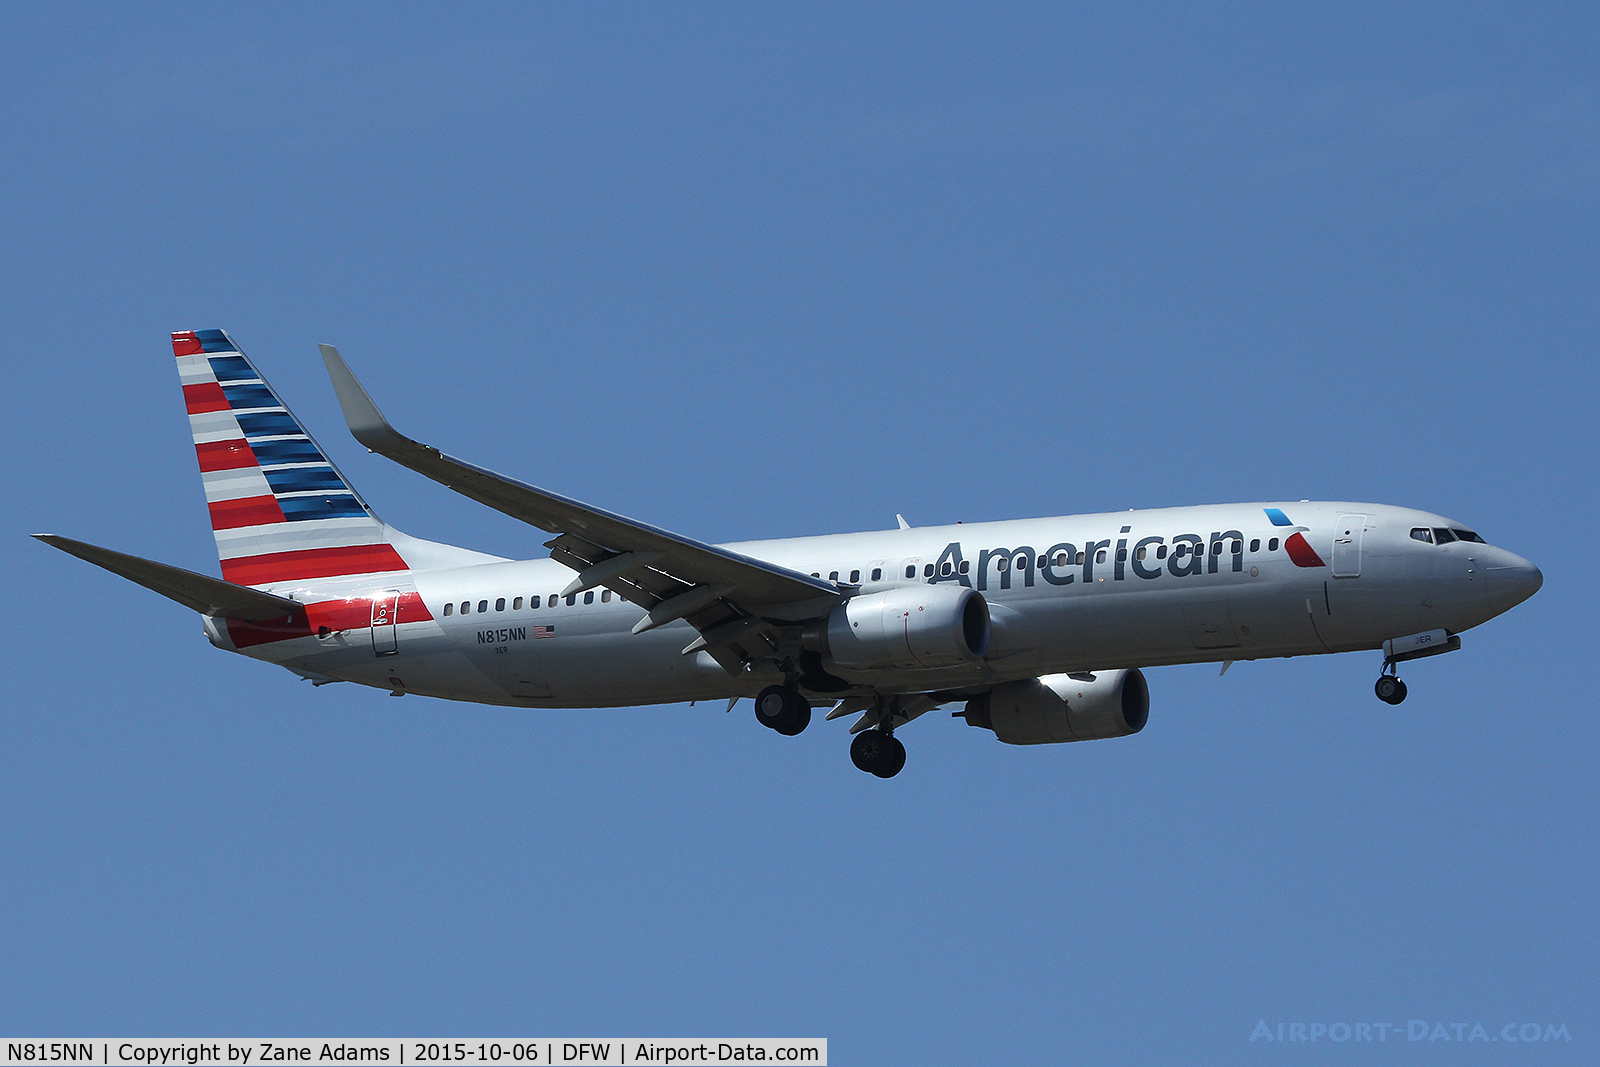 N815NN, 2009 Boeing 737-823 C/N 33208, American Airlines arriving at DFW Airport